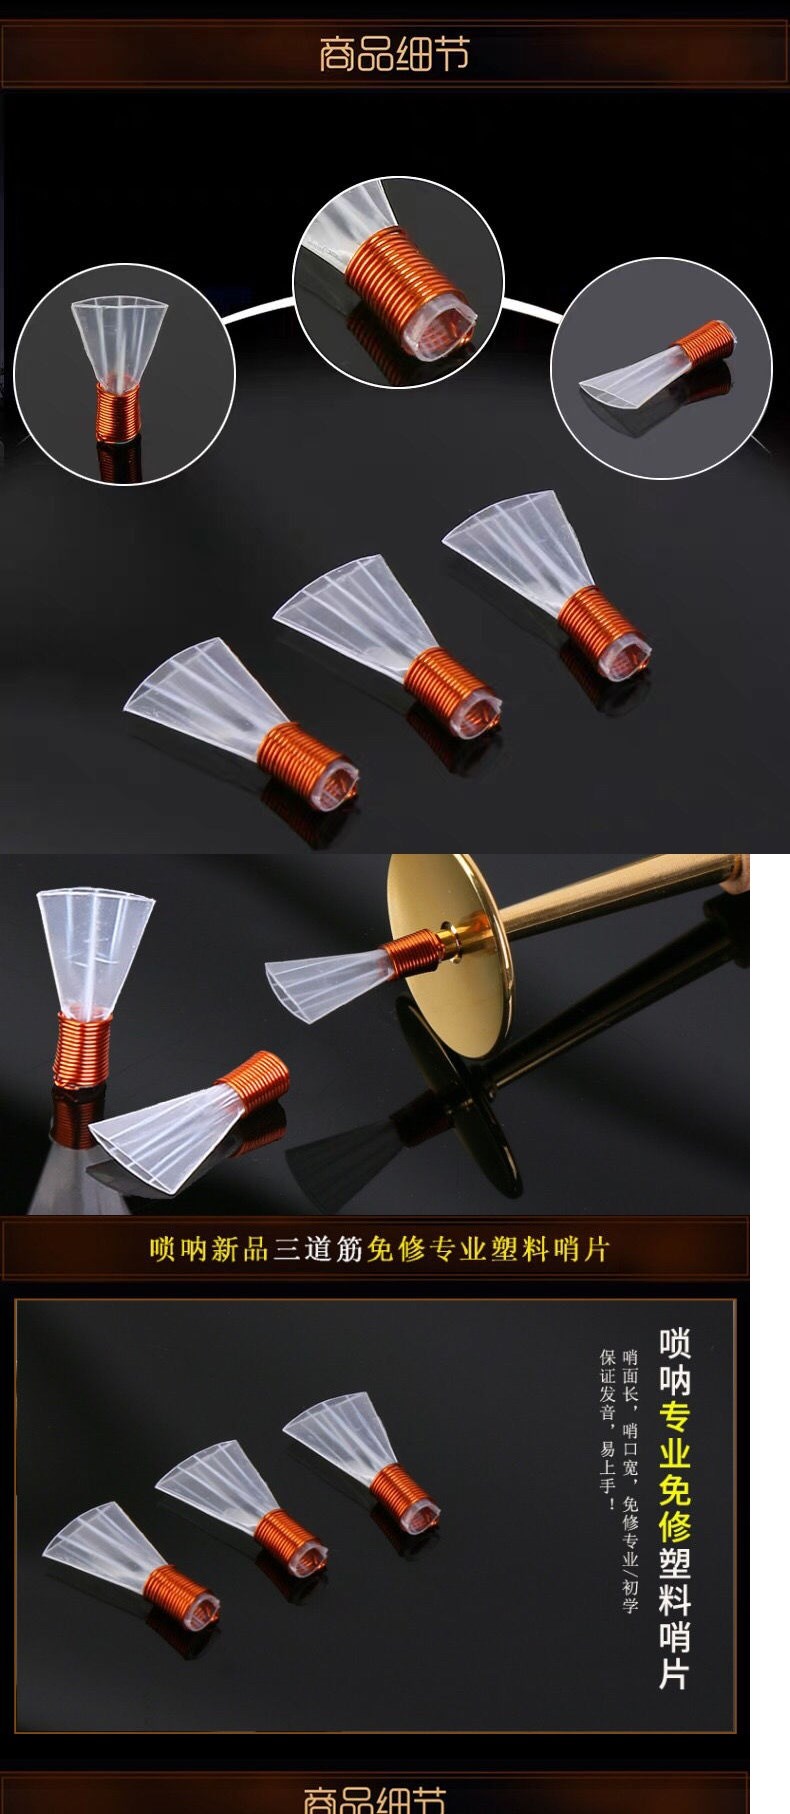 Còi gỗ mun còi miễn phí sửa chữa còi nhạc cụ chuyên nghiệp cây sậy thổi tốt hộp phụ kiện Yanjing ba gân sản phẩm mới - Nhạc cụ dân tộc